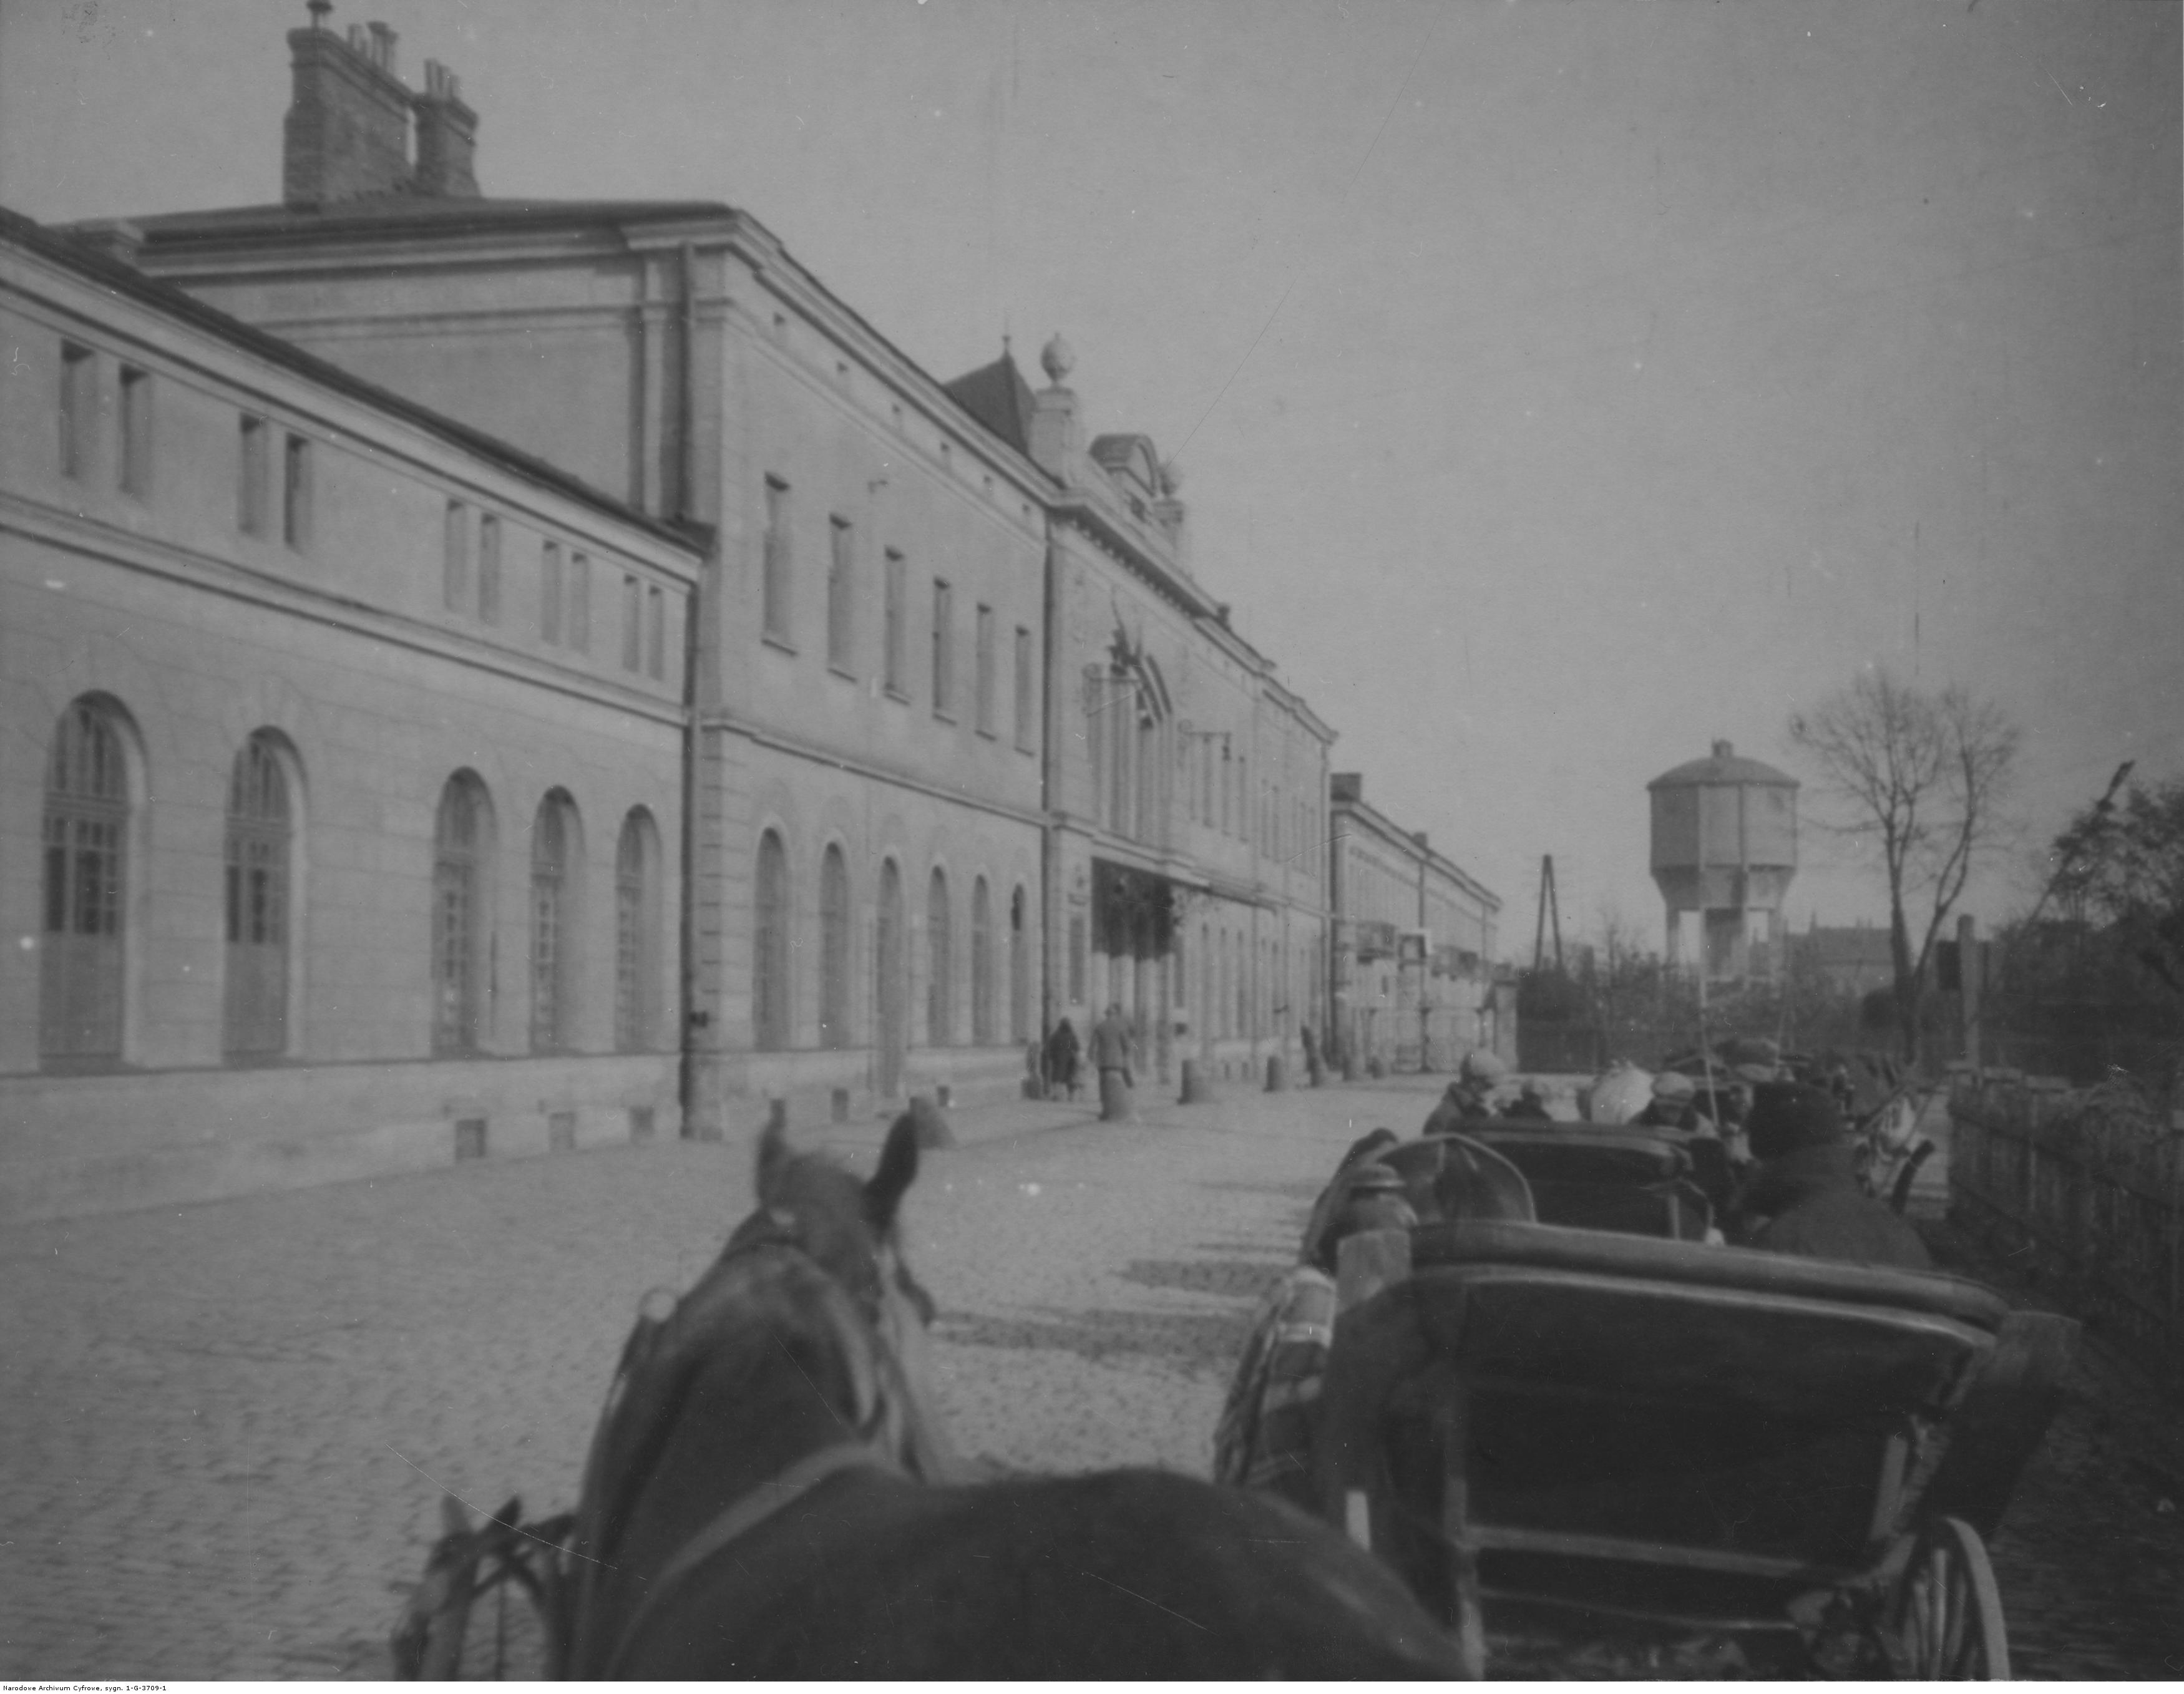 Dworzec kolejowy w Rzeszowie - widok od strony ulicy, rok 1932